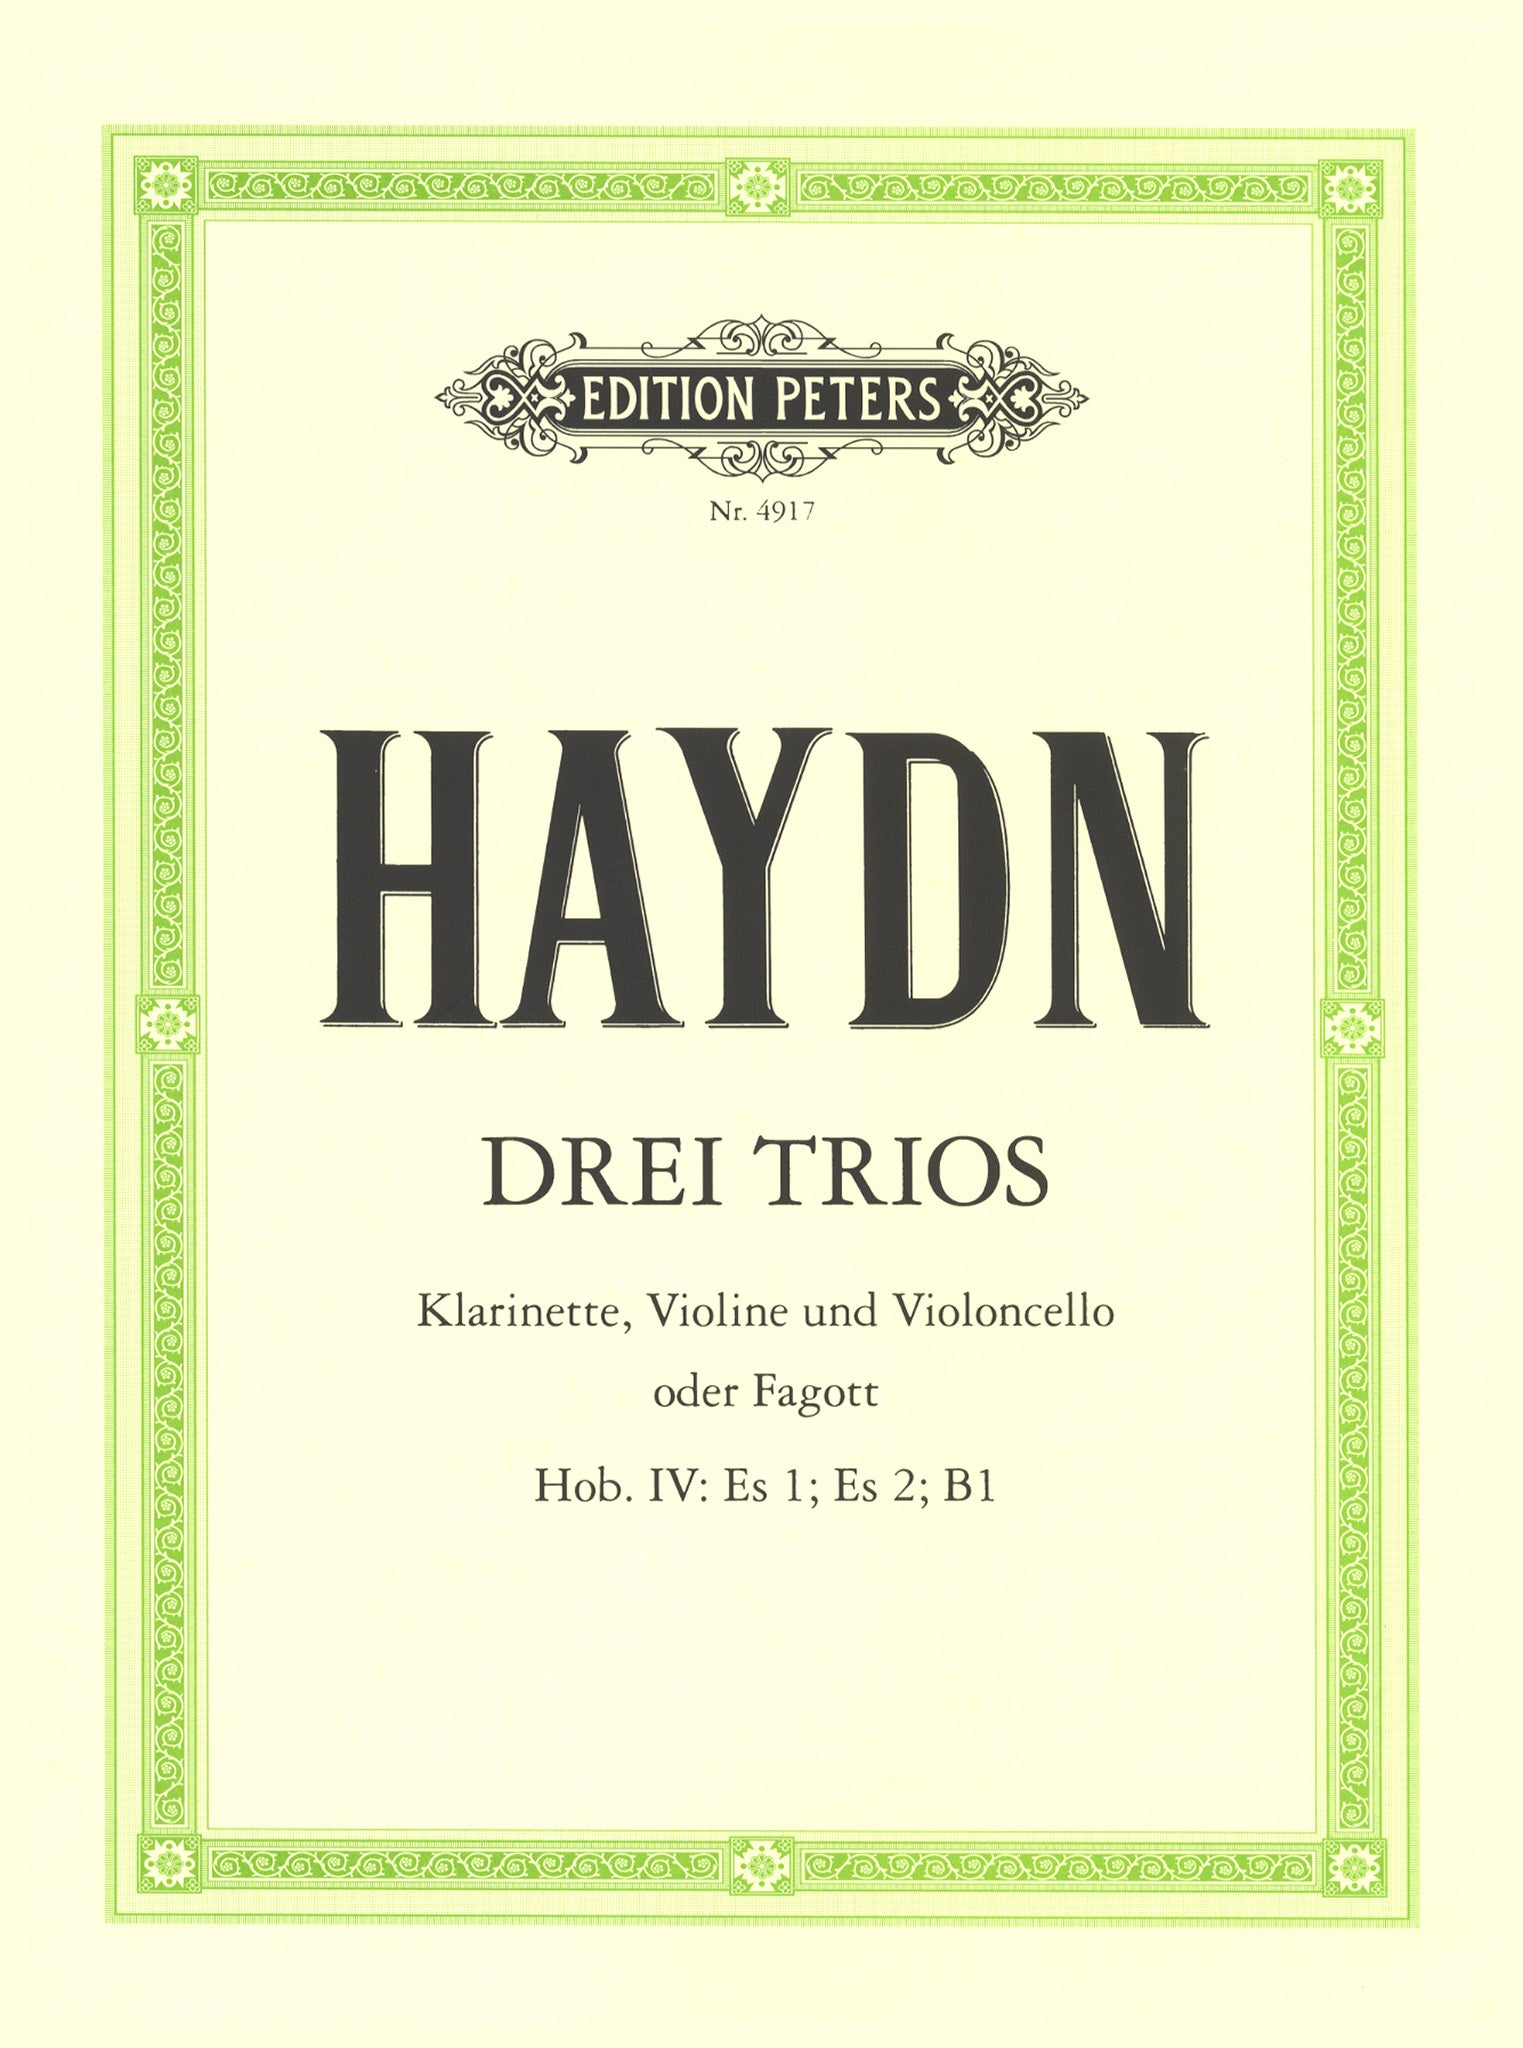 Haydn Three Clarinet Trios, Hob. IV: Es1; Es2; B1 cover